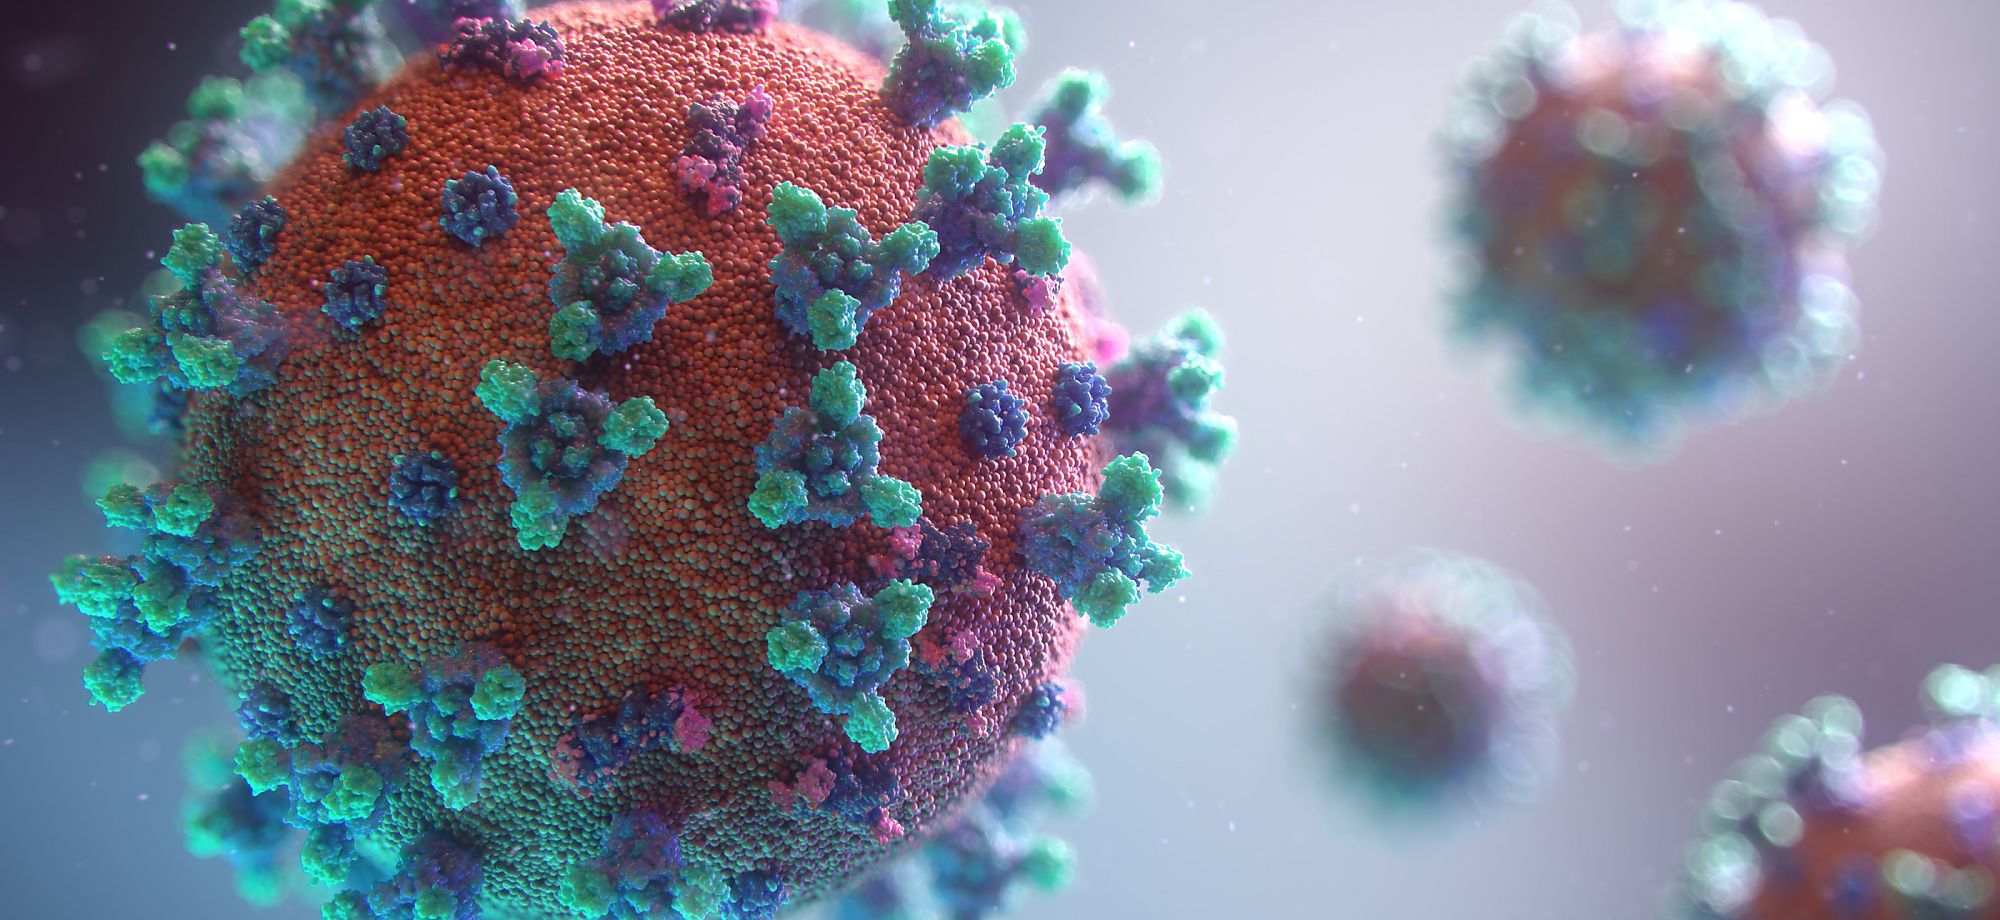 Coronavirus closeup